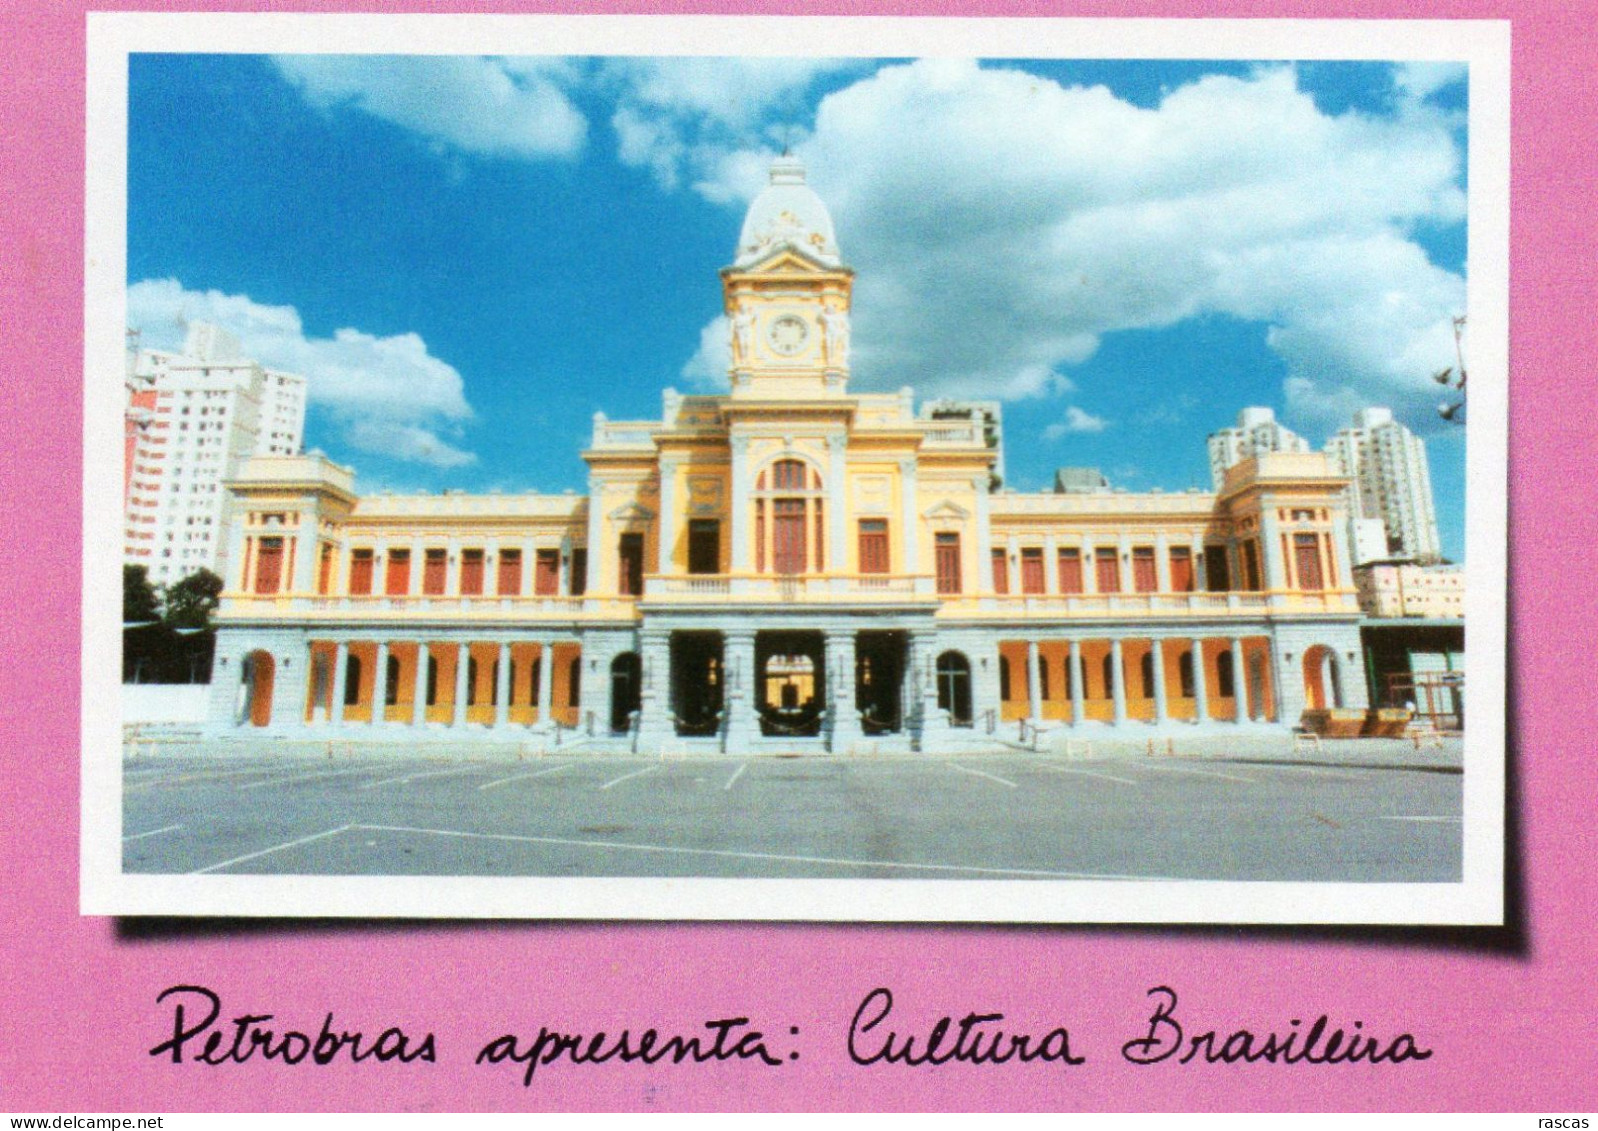 CPM - L - BRESIL - BELO HORIZONTE - MUSEU DE ARTES E OFICIOS DE BELO HORIZONTE - PETROBRAS APRESENTA CULTURA BRASILEIRA - Belo Horizonte